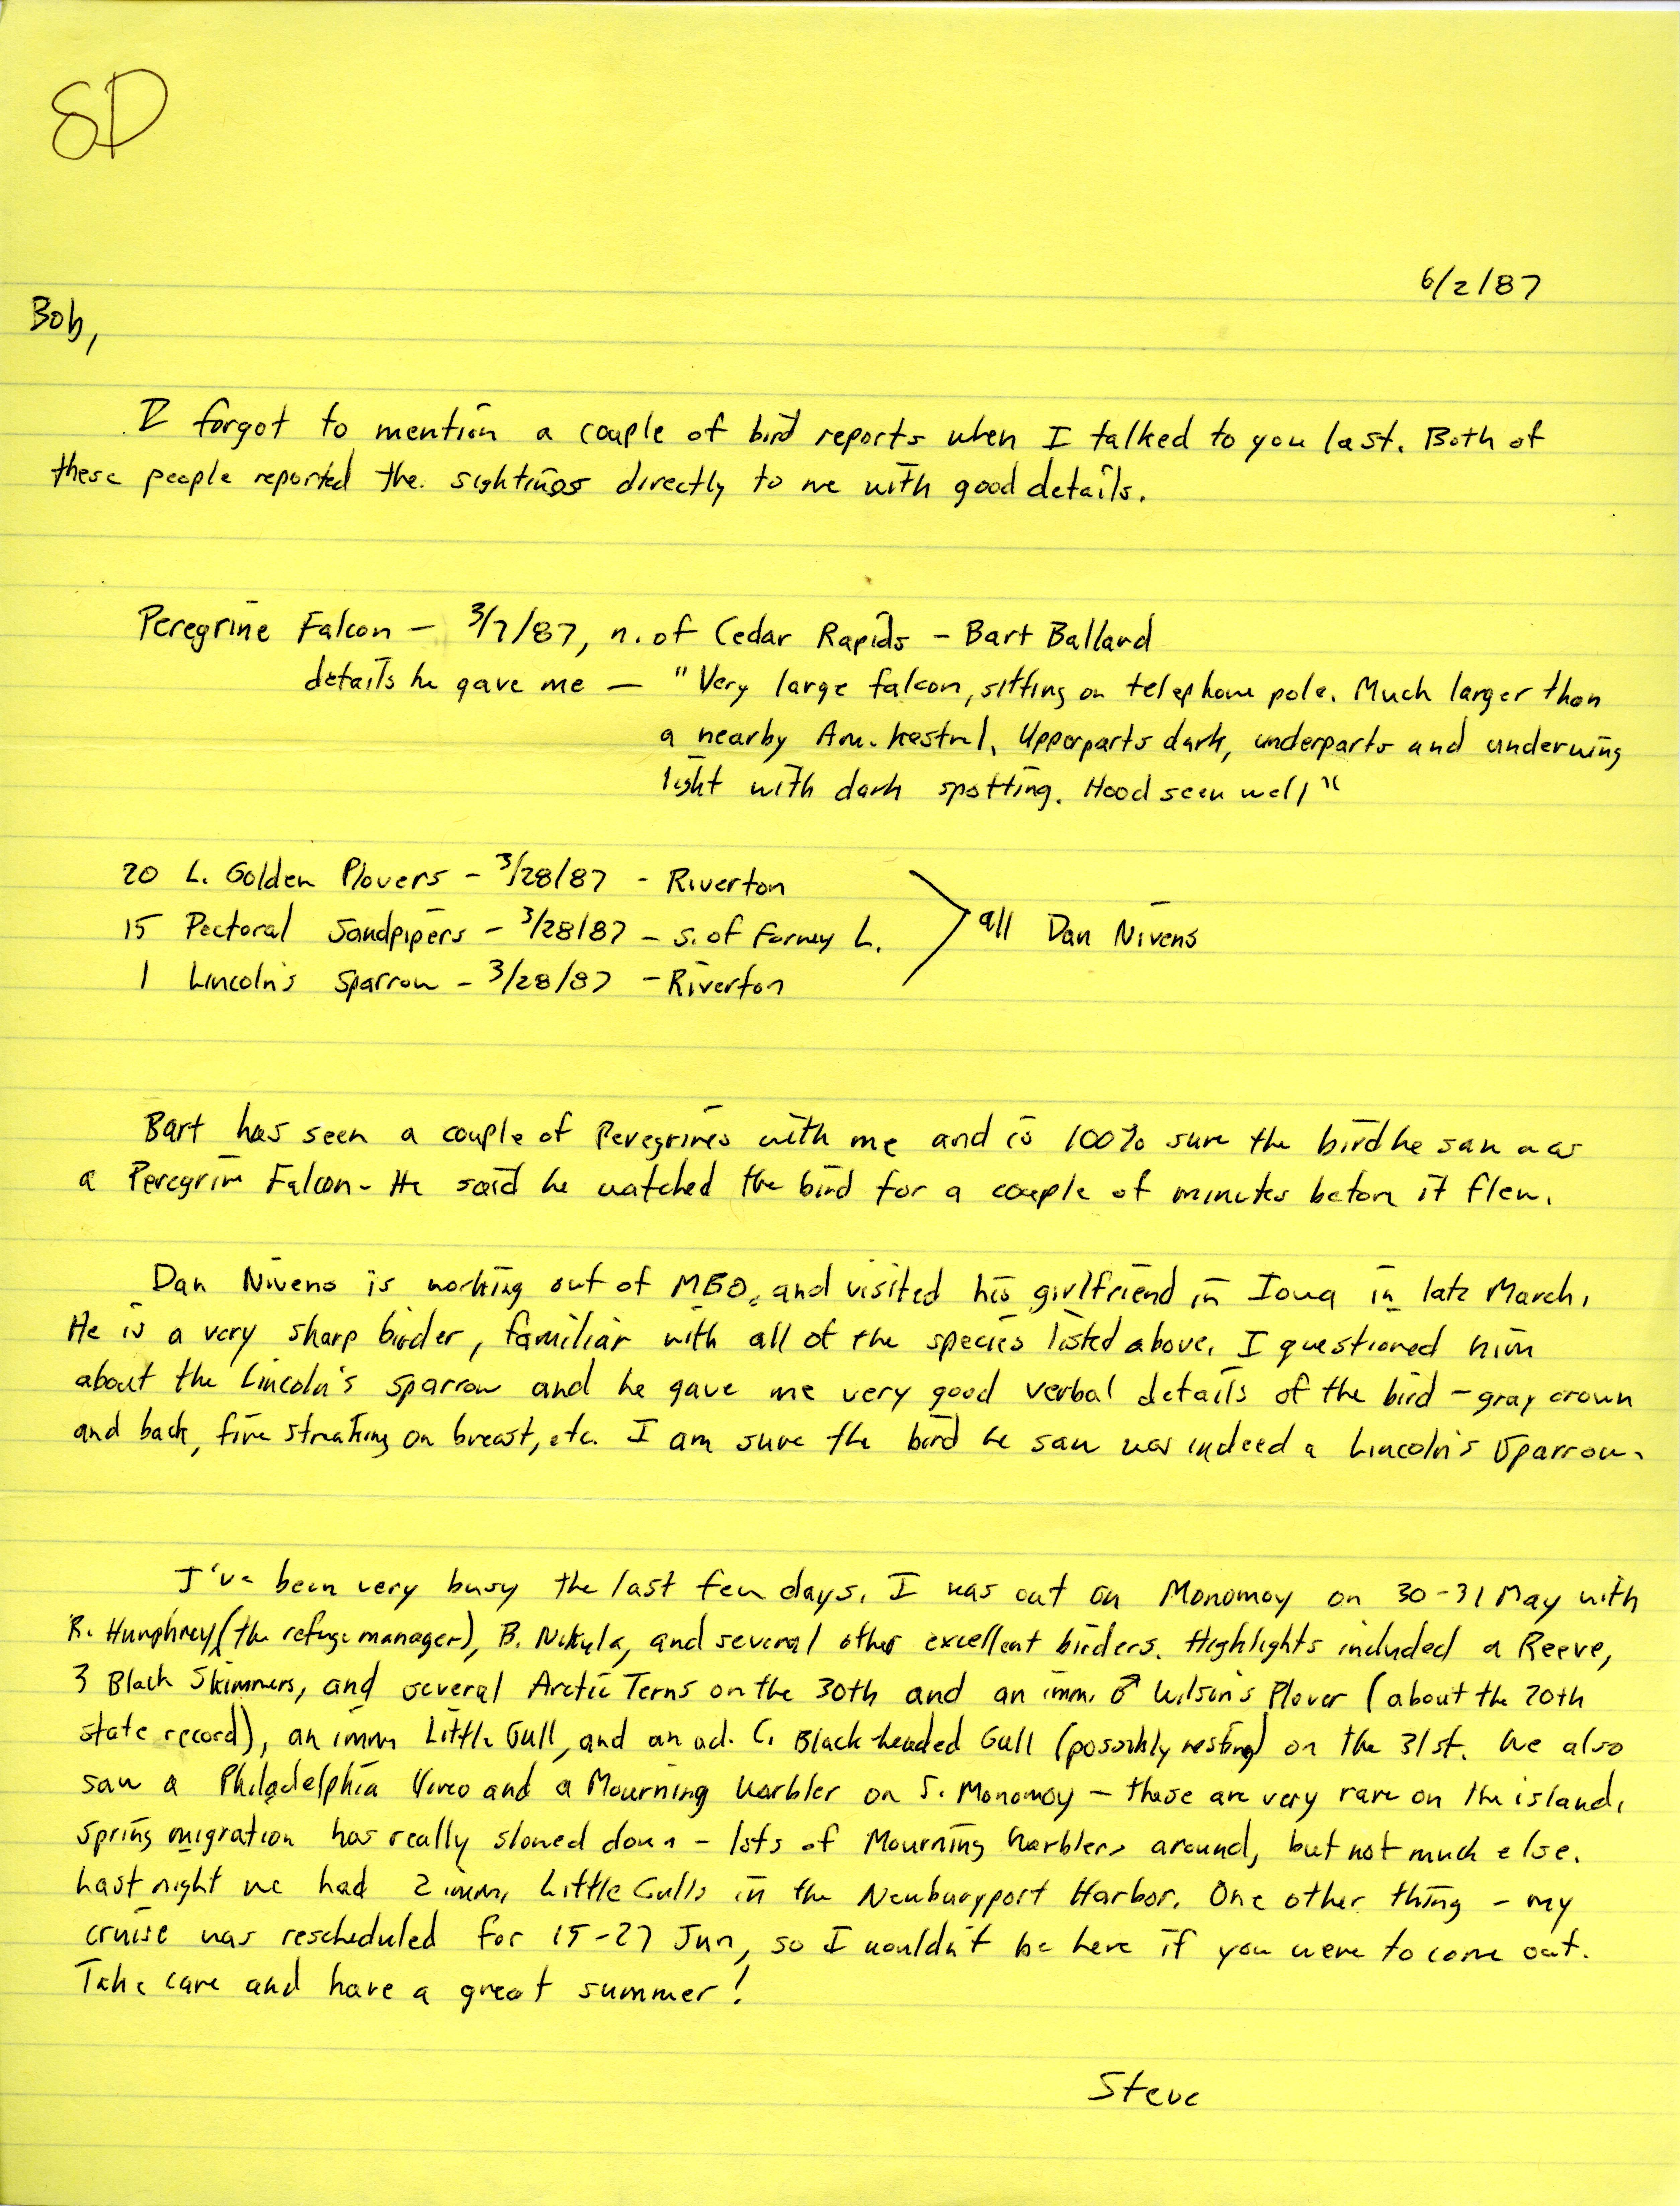 Stephen J. Dinsmore letter to Robert K. Myers regarding bird sightings, June 2, 1987 